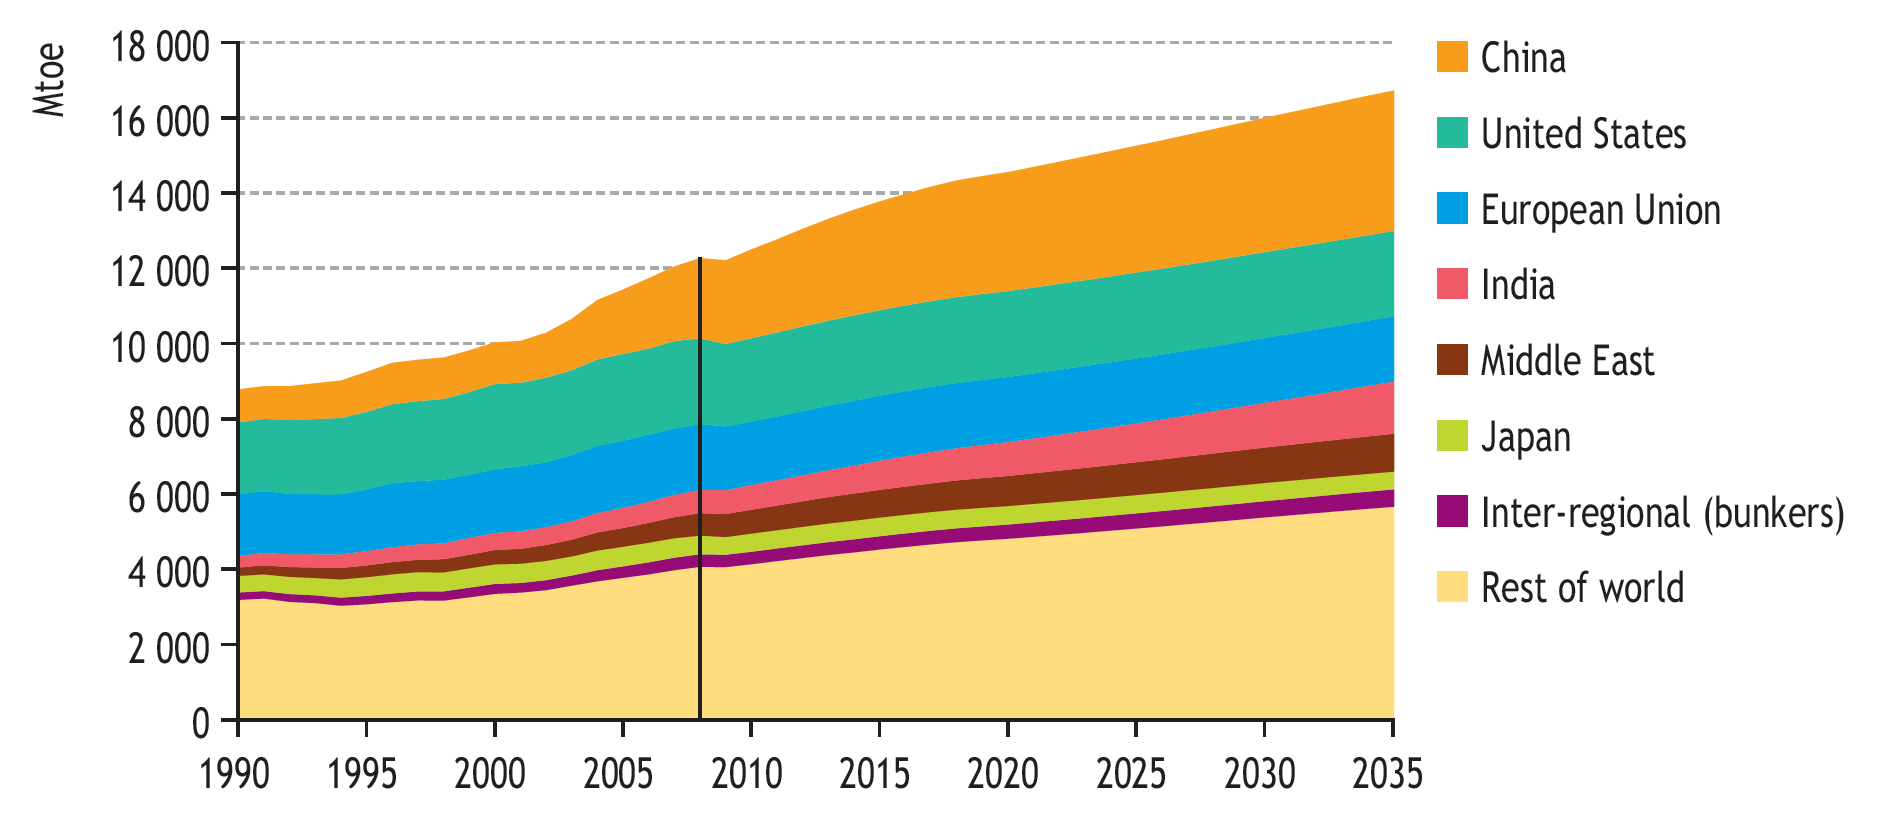 NPS: demanda de energía primaria por regiones y países (Mtoe) 2008-2035 China: + 75,4 %